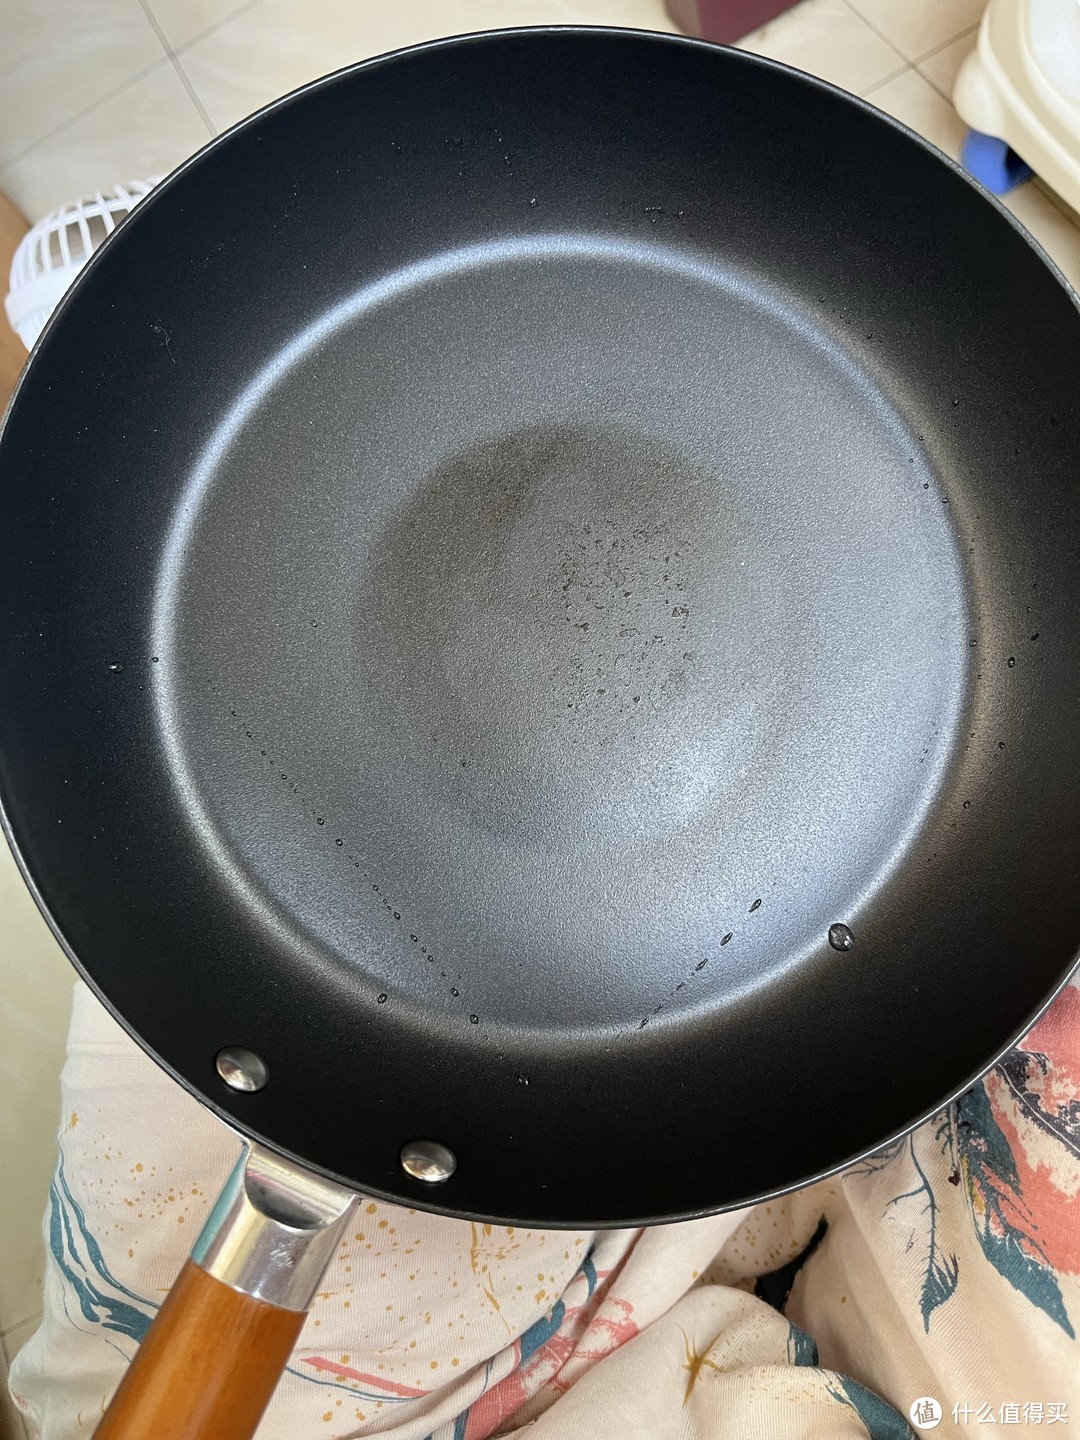 黑晶铁锅系列煎锅到底是不是涂层锅